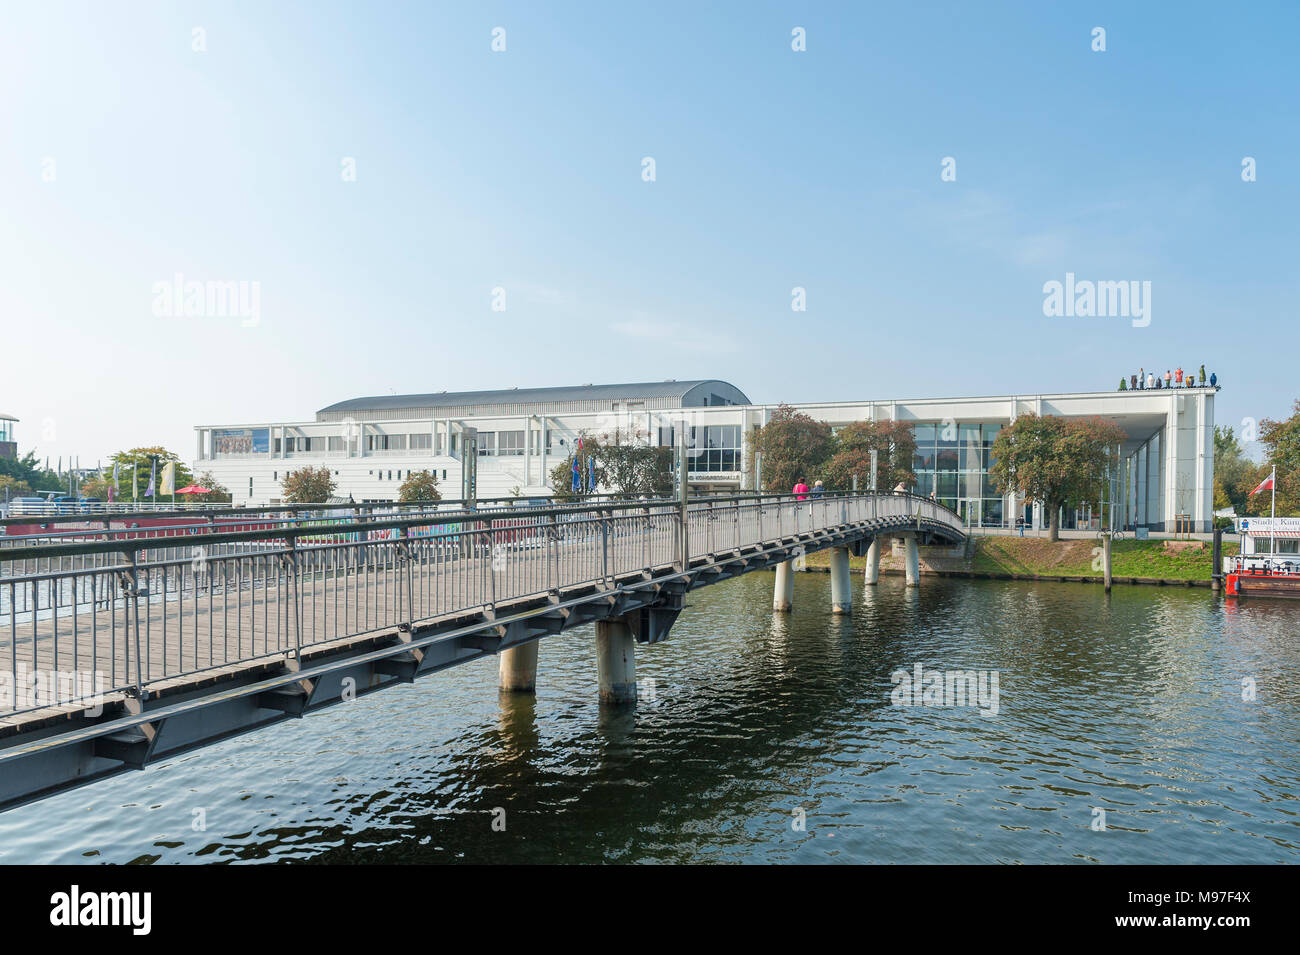 Blick auf die Musik- und Kongresshalle mit Fußgänger-Brücke über die Trave, Lübeck, Ostsee, Schleswig-Holstein, Deutschland, Europa Stockfoto